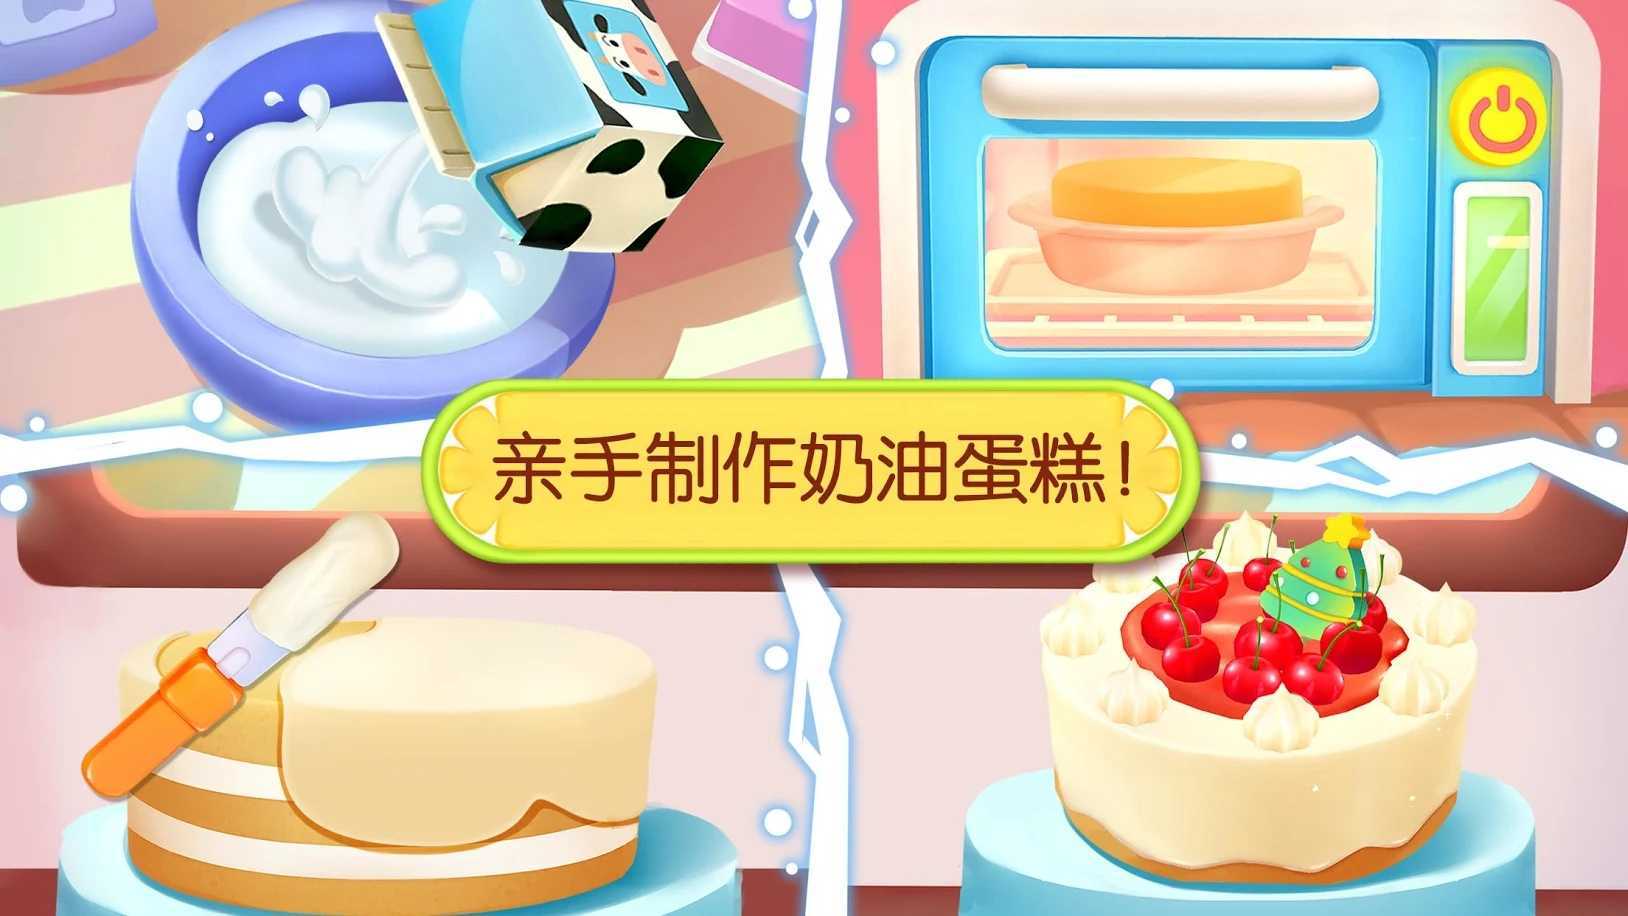 宝宝巴士奇妙蛋糕店(2)